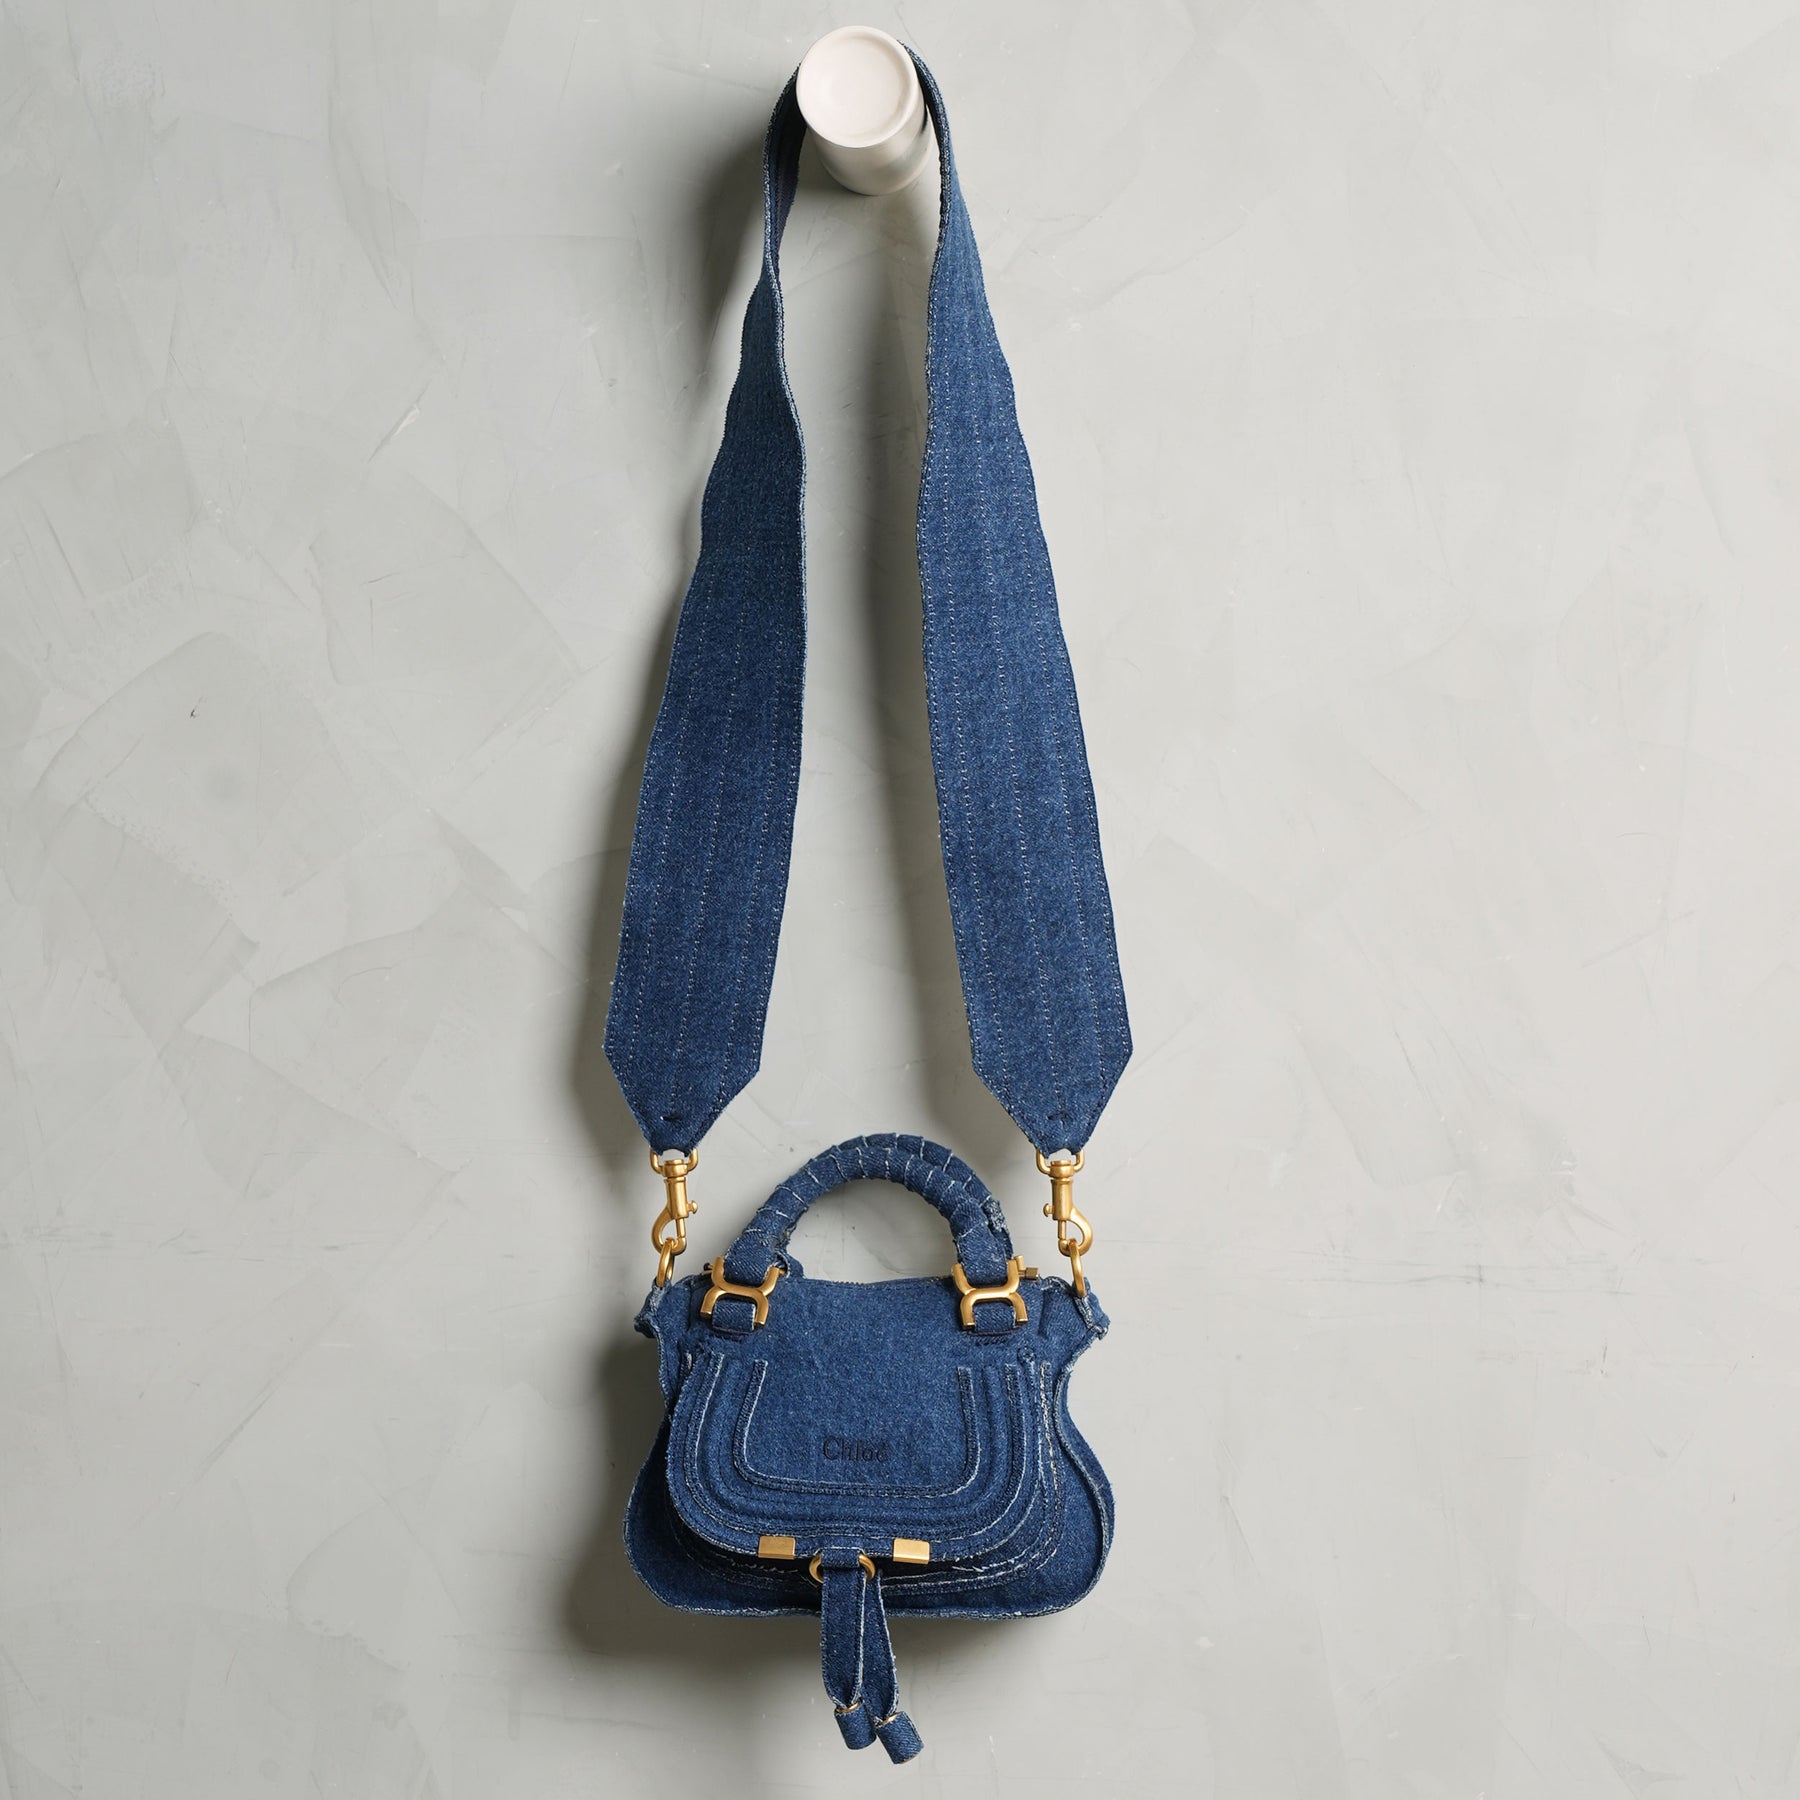 Small Denim Bag Mini Crossbody Bag with 2 Outer Zippered Pockets - Denim -  CY12MO6WI13 | Denim bag, Denim handbags, Crossbody bag